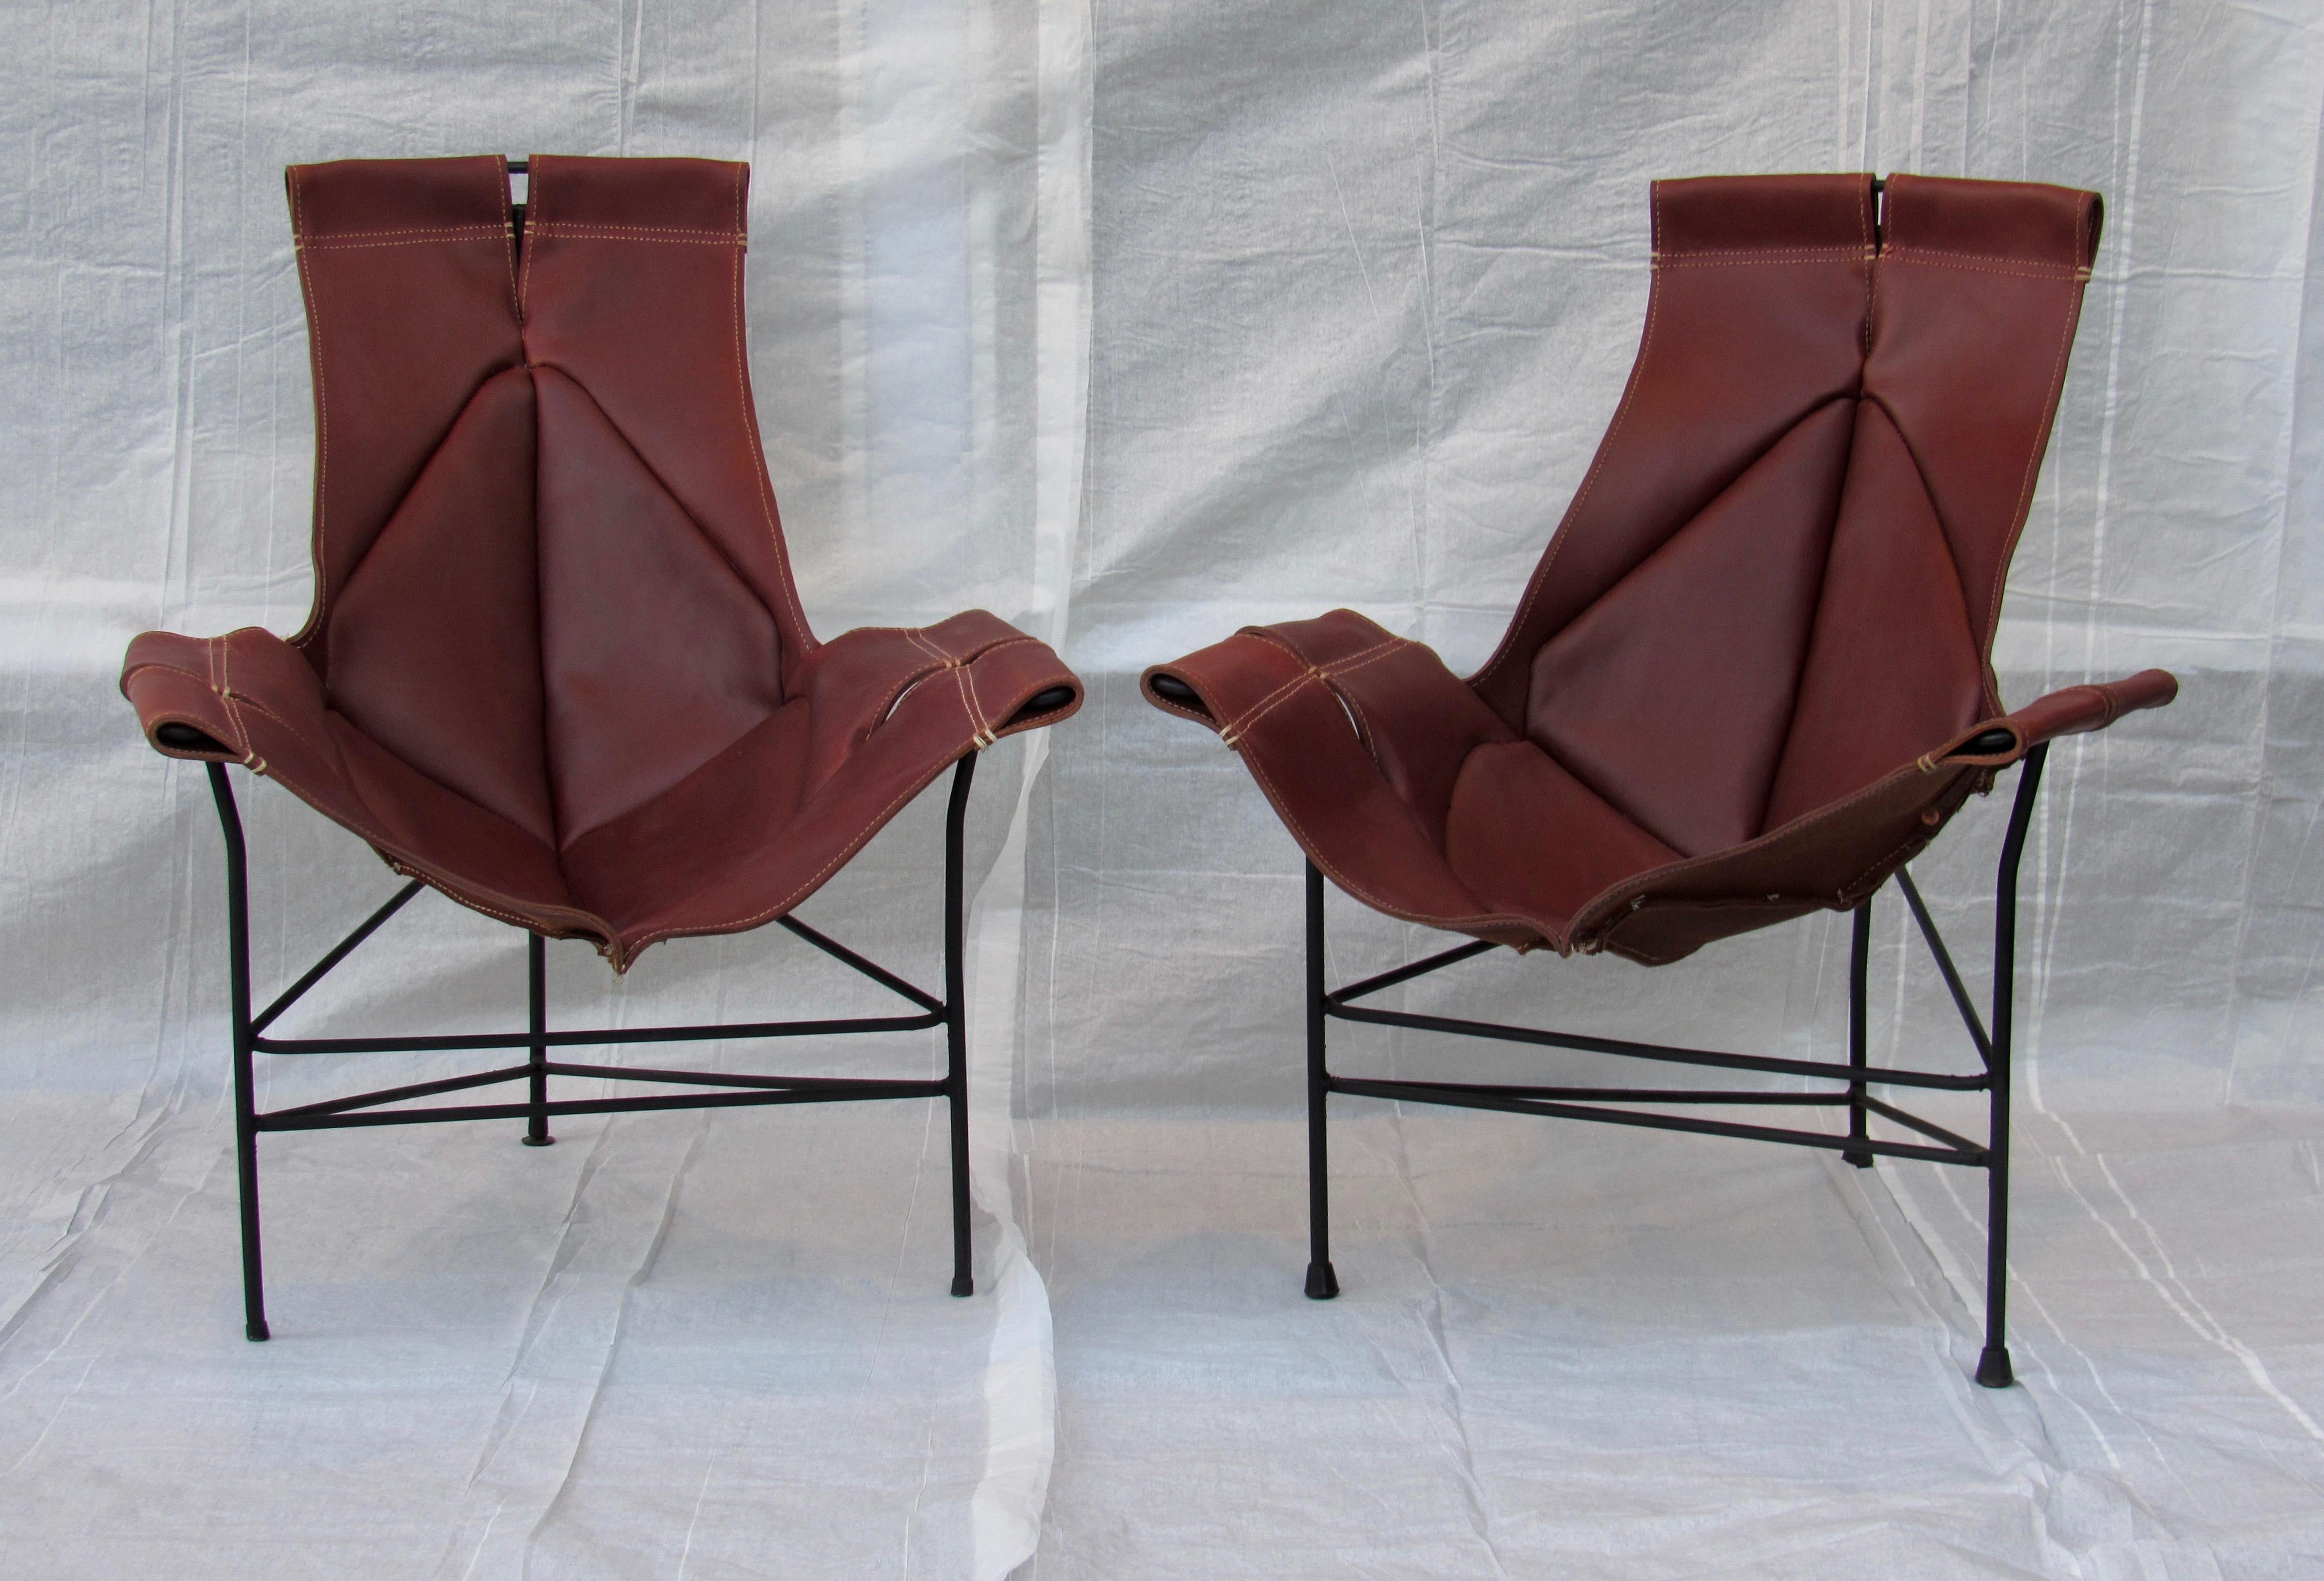 Chaises longues en fer forgé et cuir conçues par Jerry Johnson pour Leathercraft, vers 1954.
Trois disponibles, deux comme sur la photo, le troisième peut être adapté à la couleur de votre choix).
Les prix s'entendent par chaise. 
Les frondes en